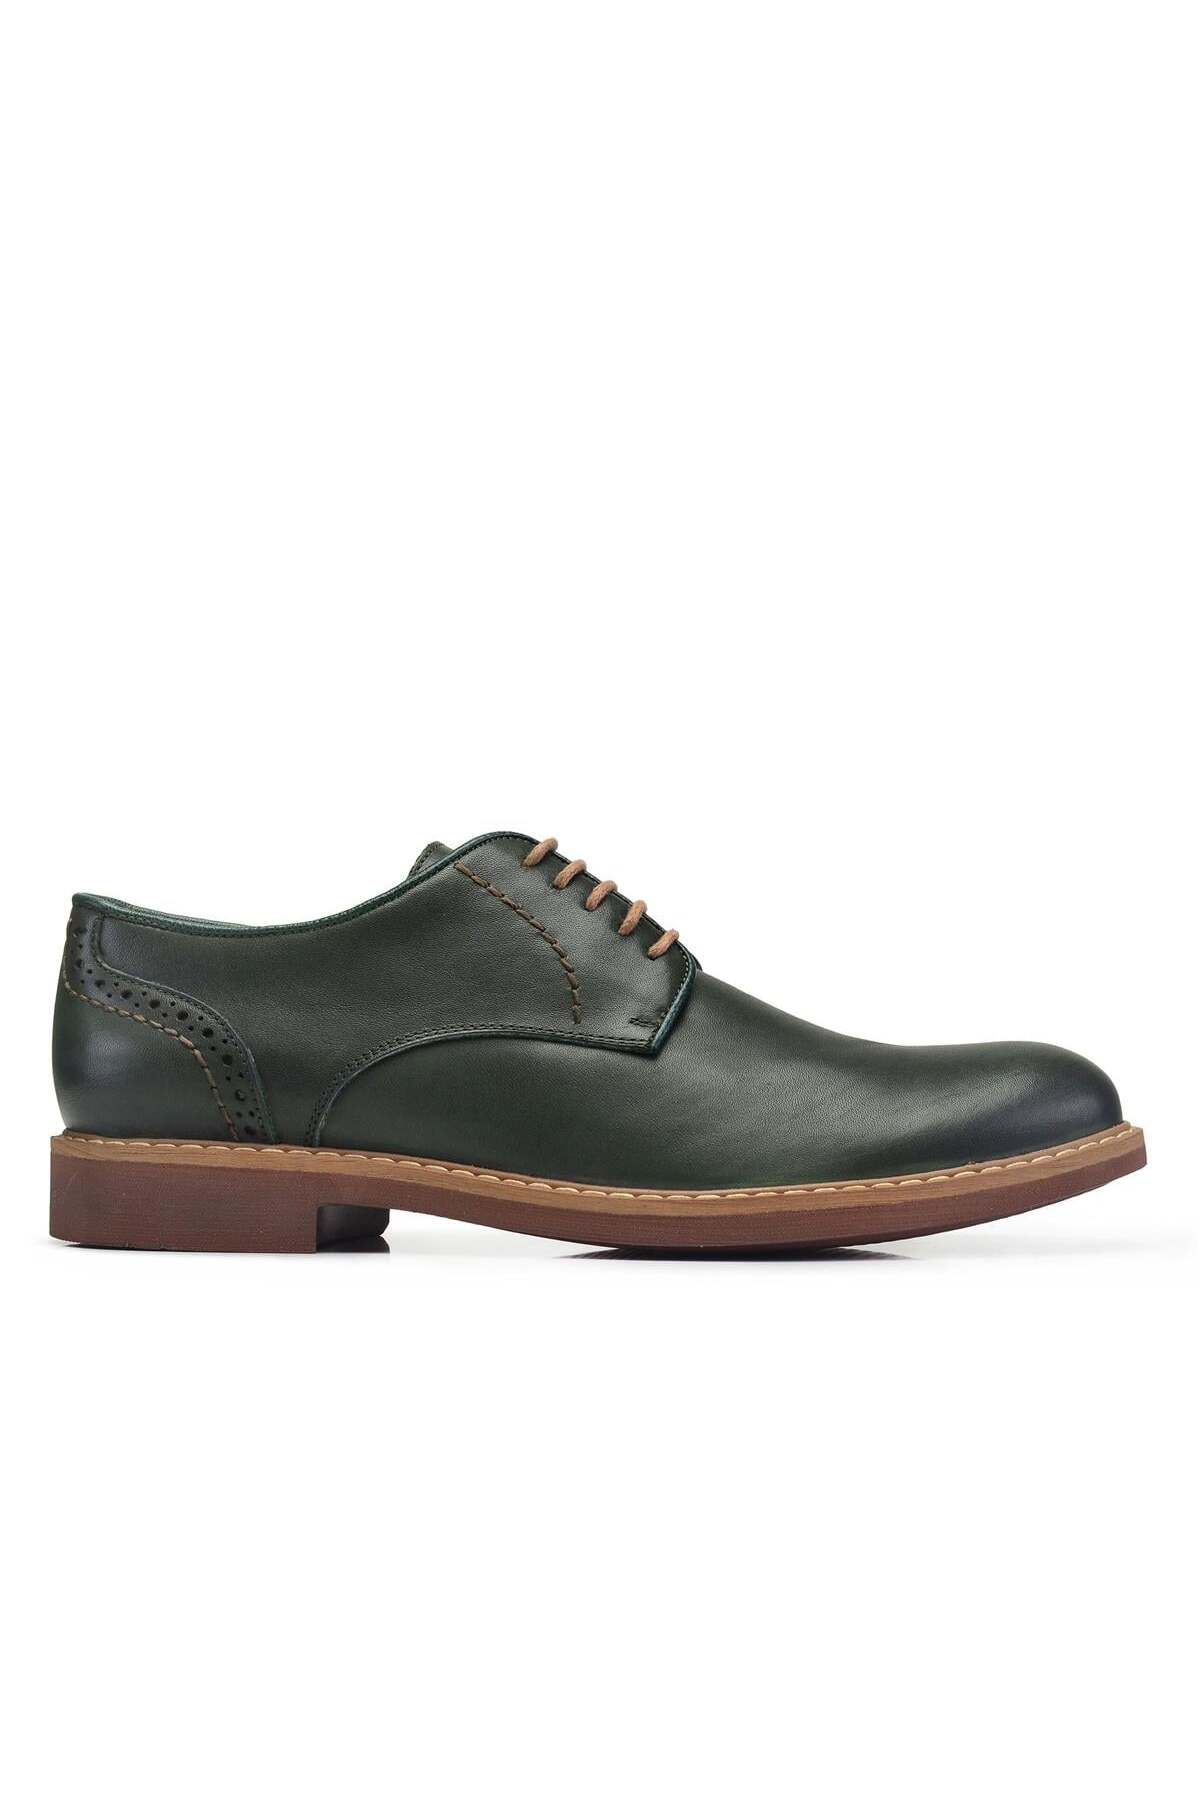 Nevzat Onay Yeşil Günlük Bağcıklı Erkek Ayakkabı -26502-